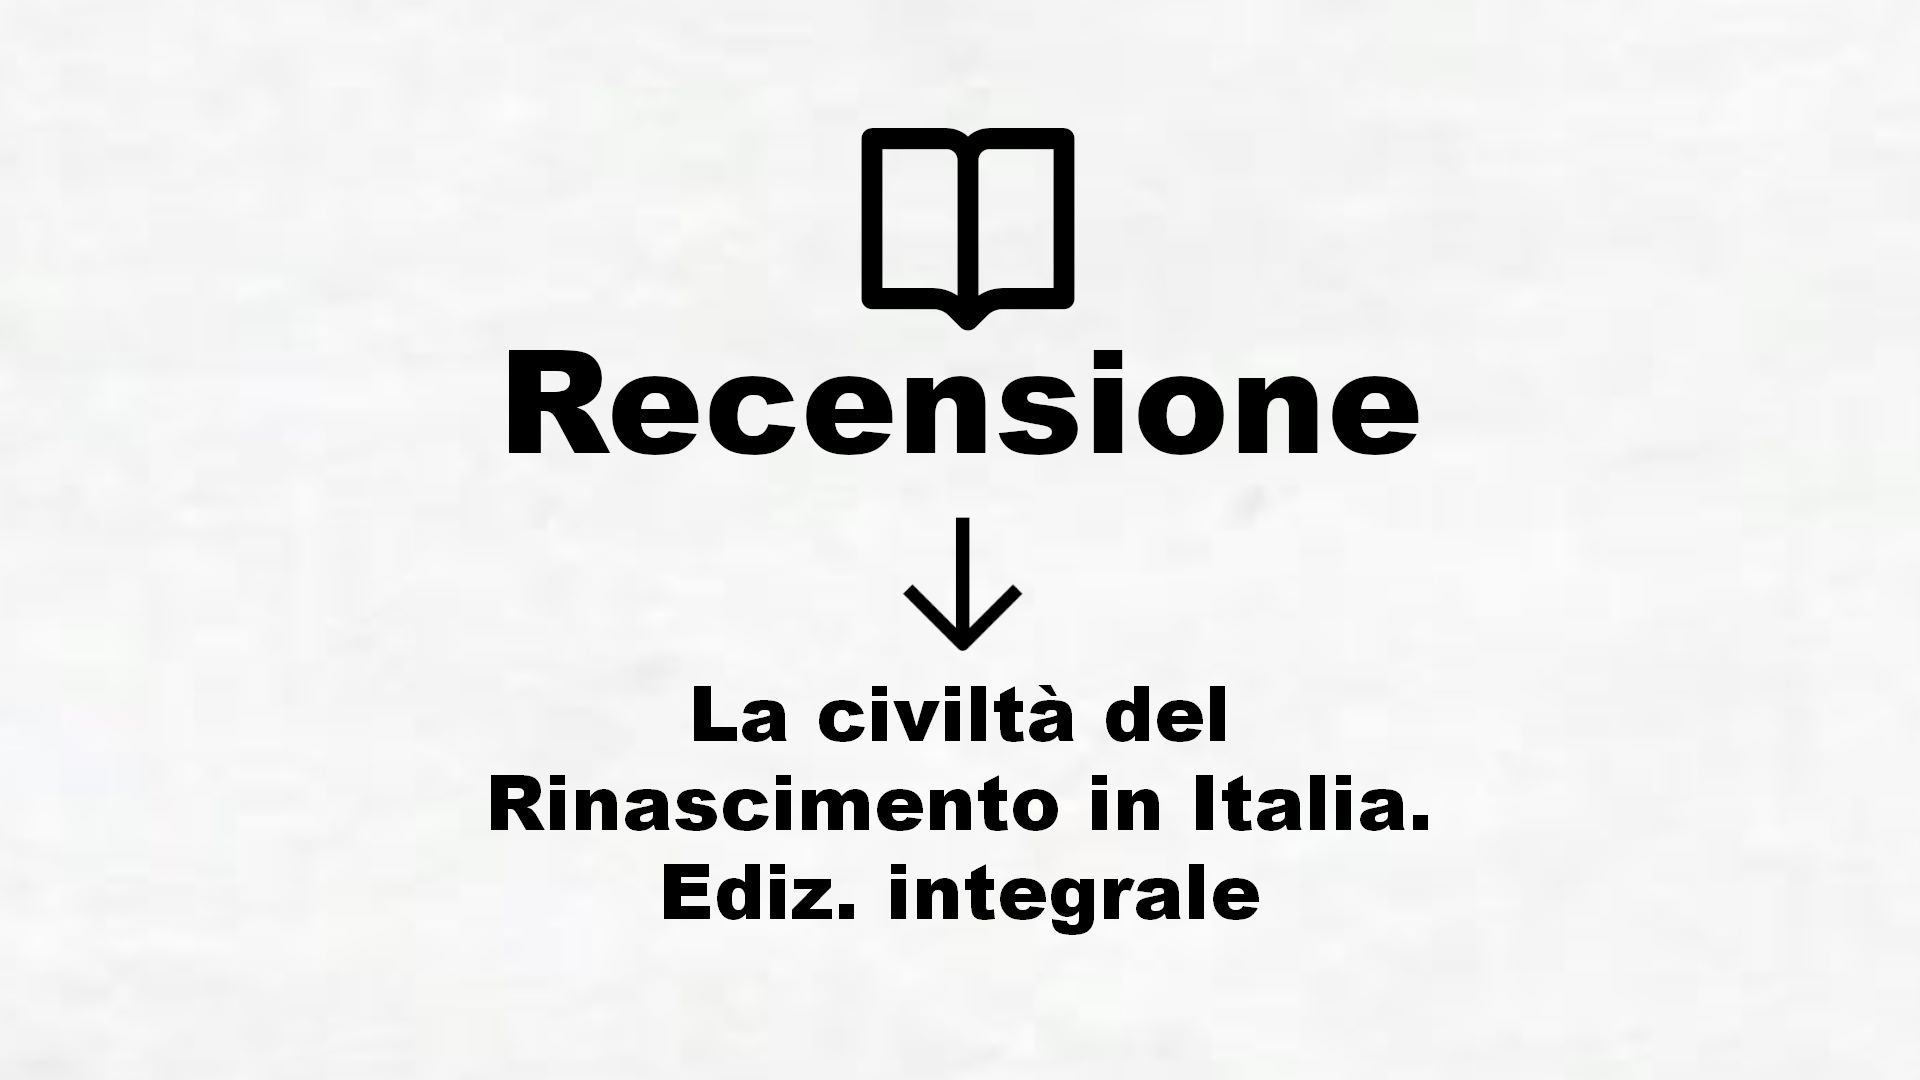 La civiltà del Rinascimento in Italia. Ediz. integrale – Recensione Libro